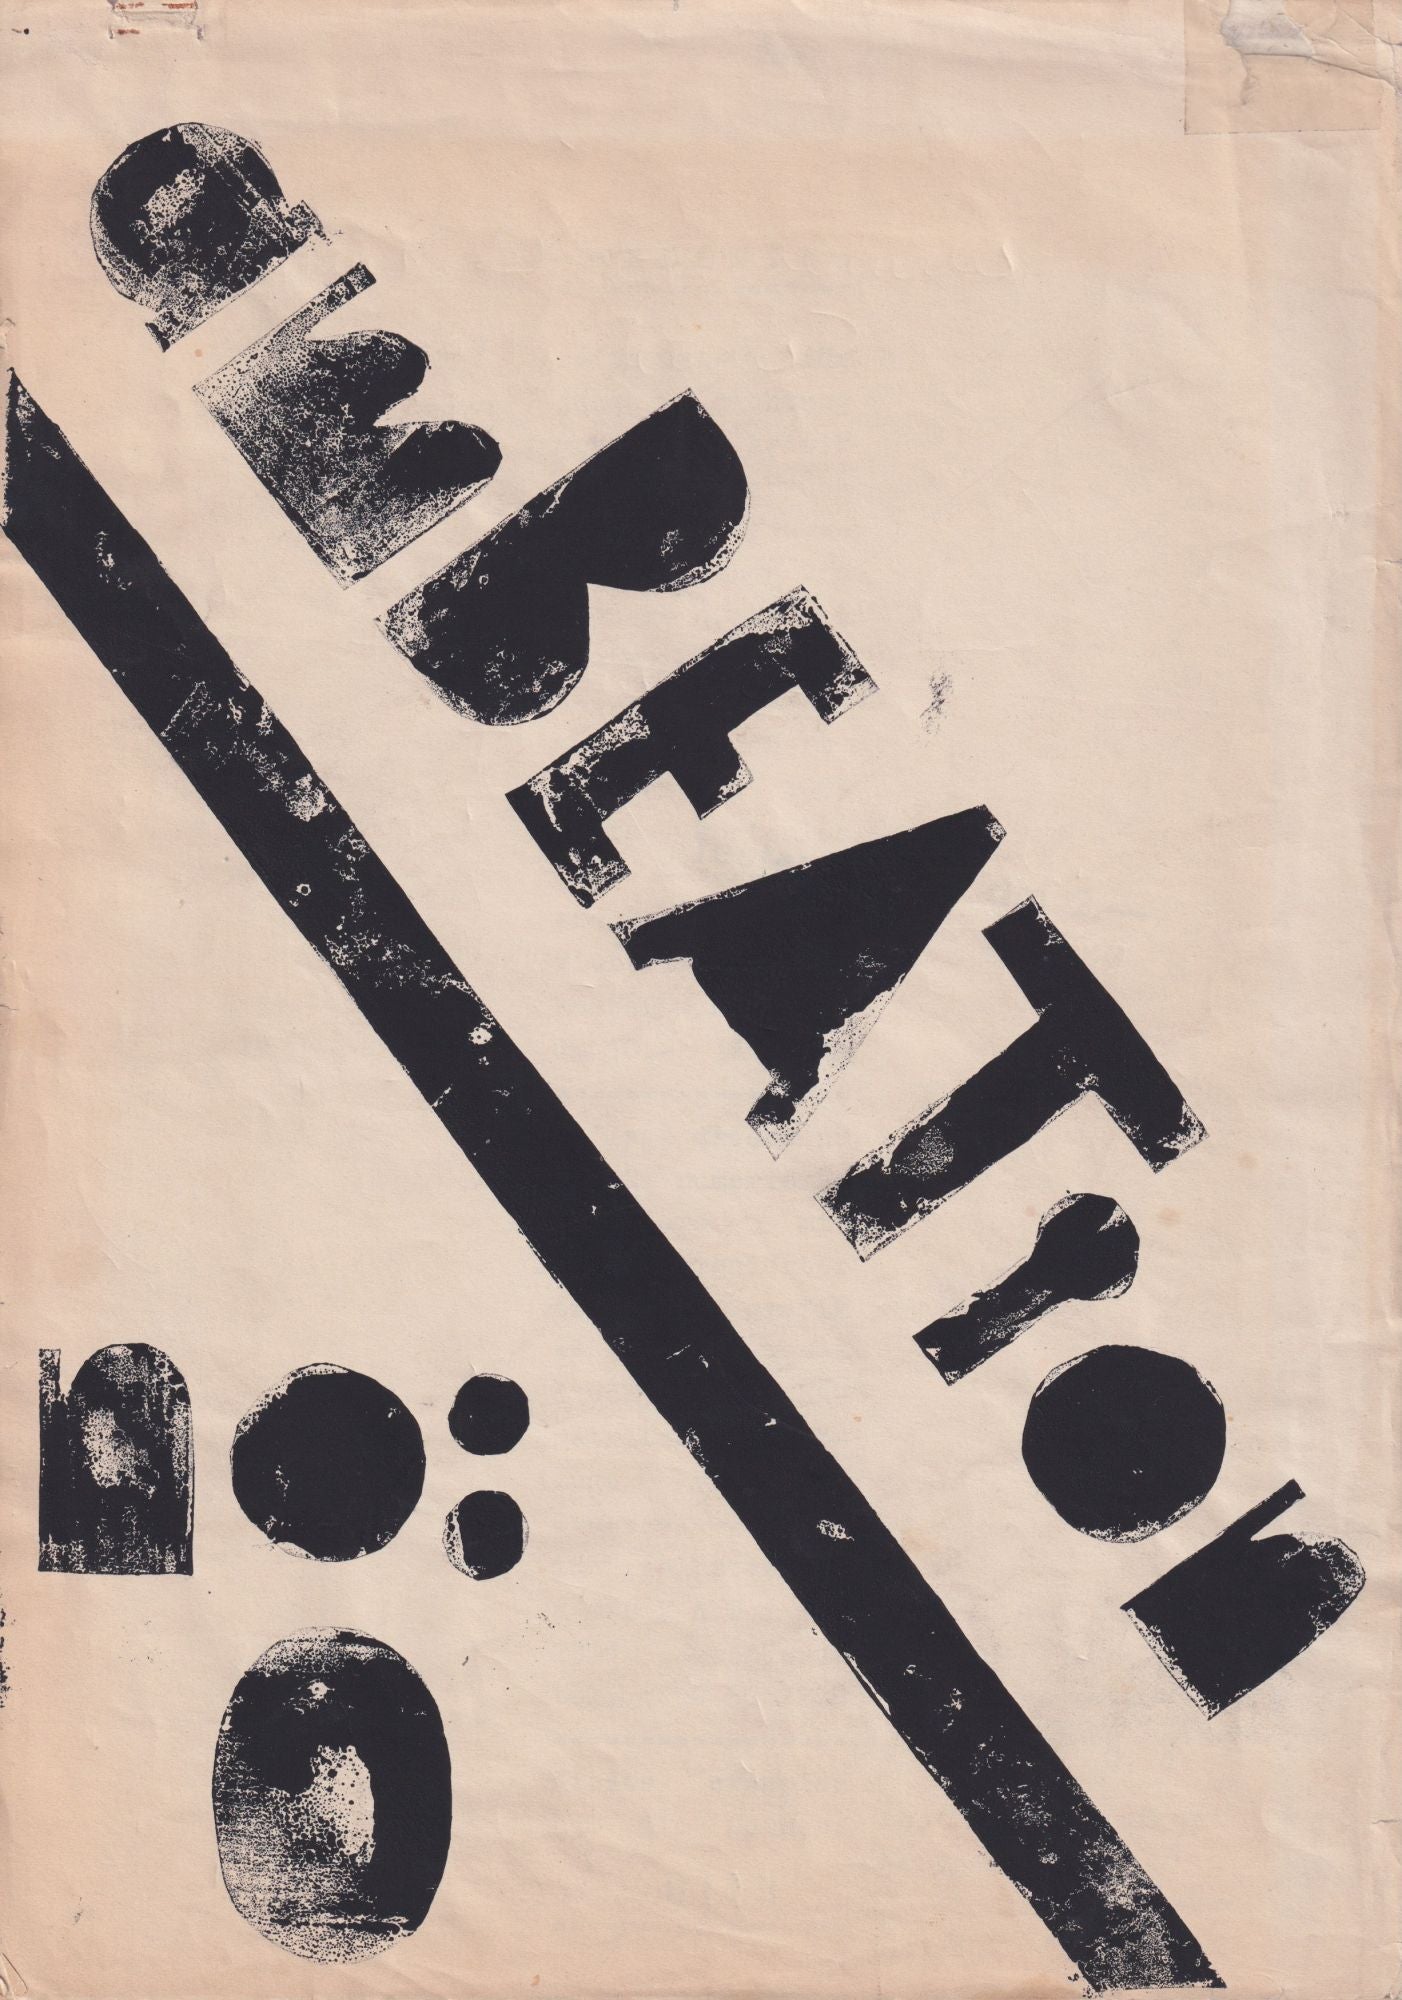 BEAT-INFLUENCED GERMAN POST-WAR MAGAZINE] AmBEATion: zeitschrift fur junge Dichtung, Grafik, Riewert Q. Tode.